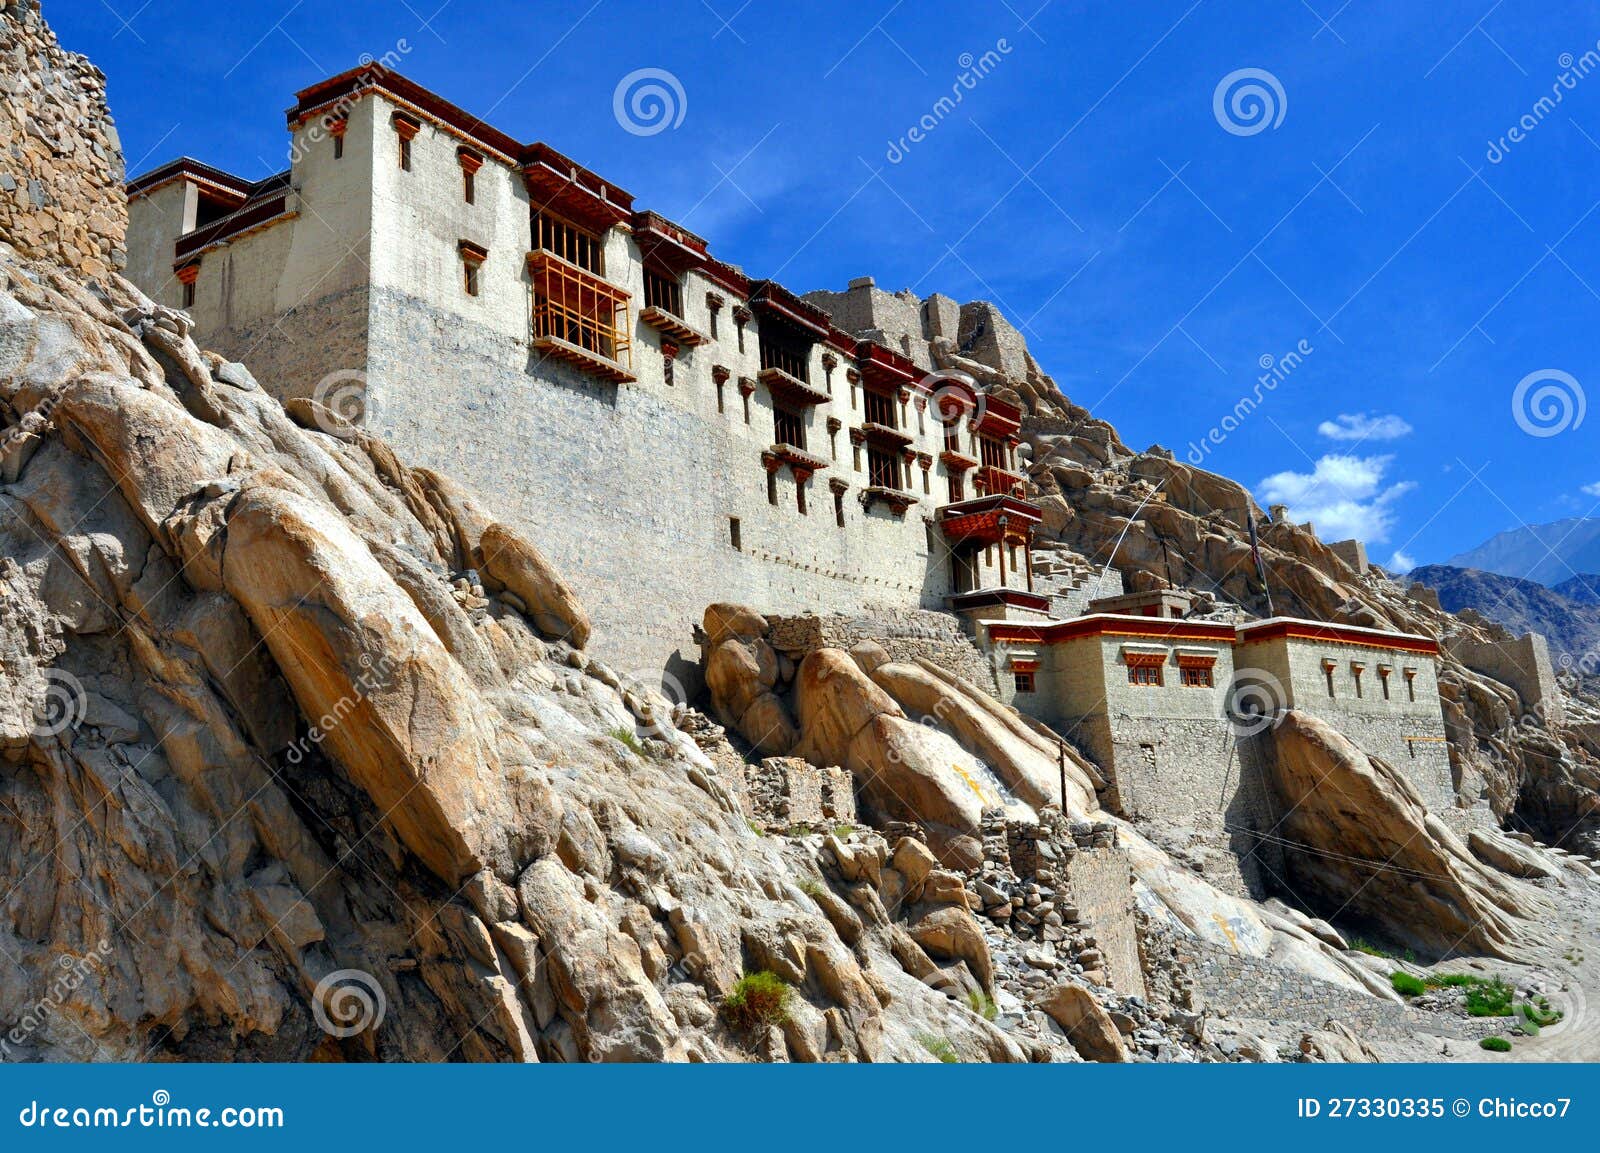 ladakh (little tibet) - shey palace in leh